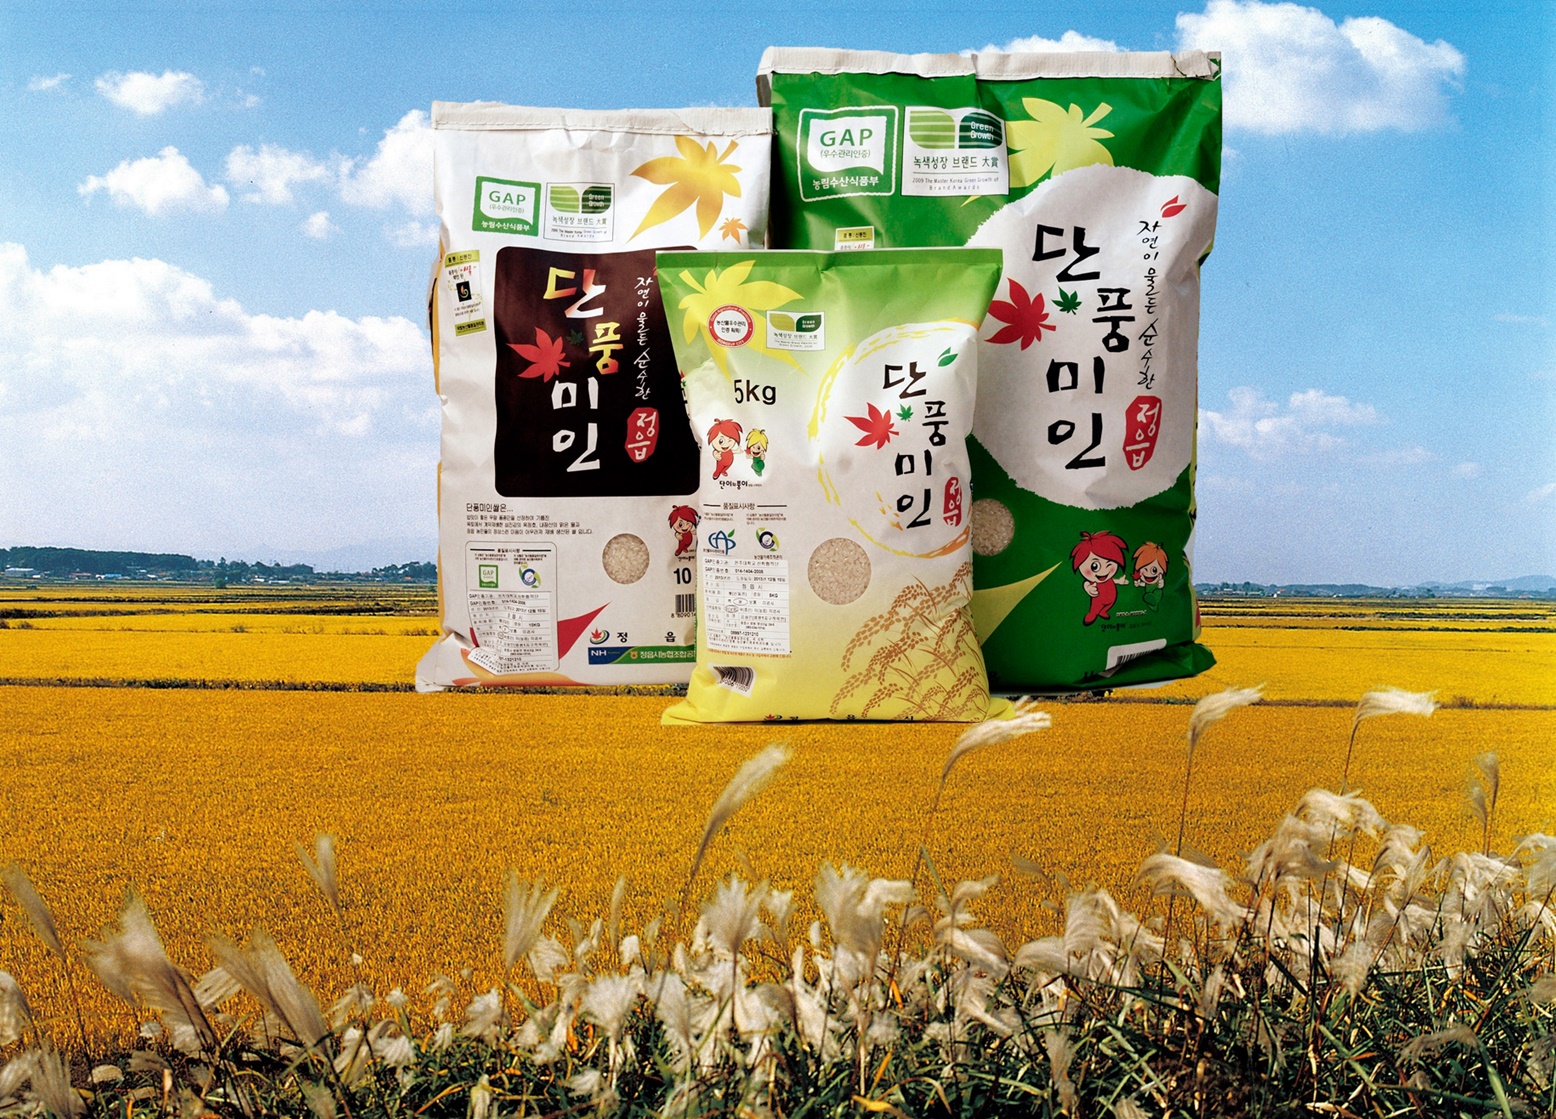 단풍미인쌀 브랜드 파워 강화 - 우리지역을 빛낸 쌀